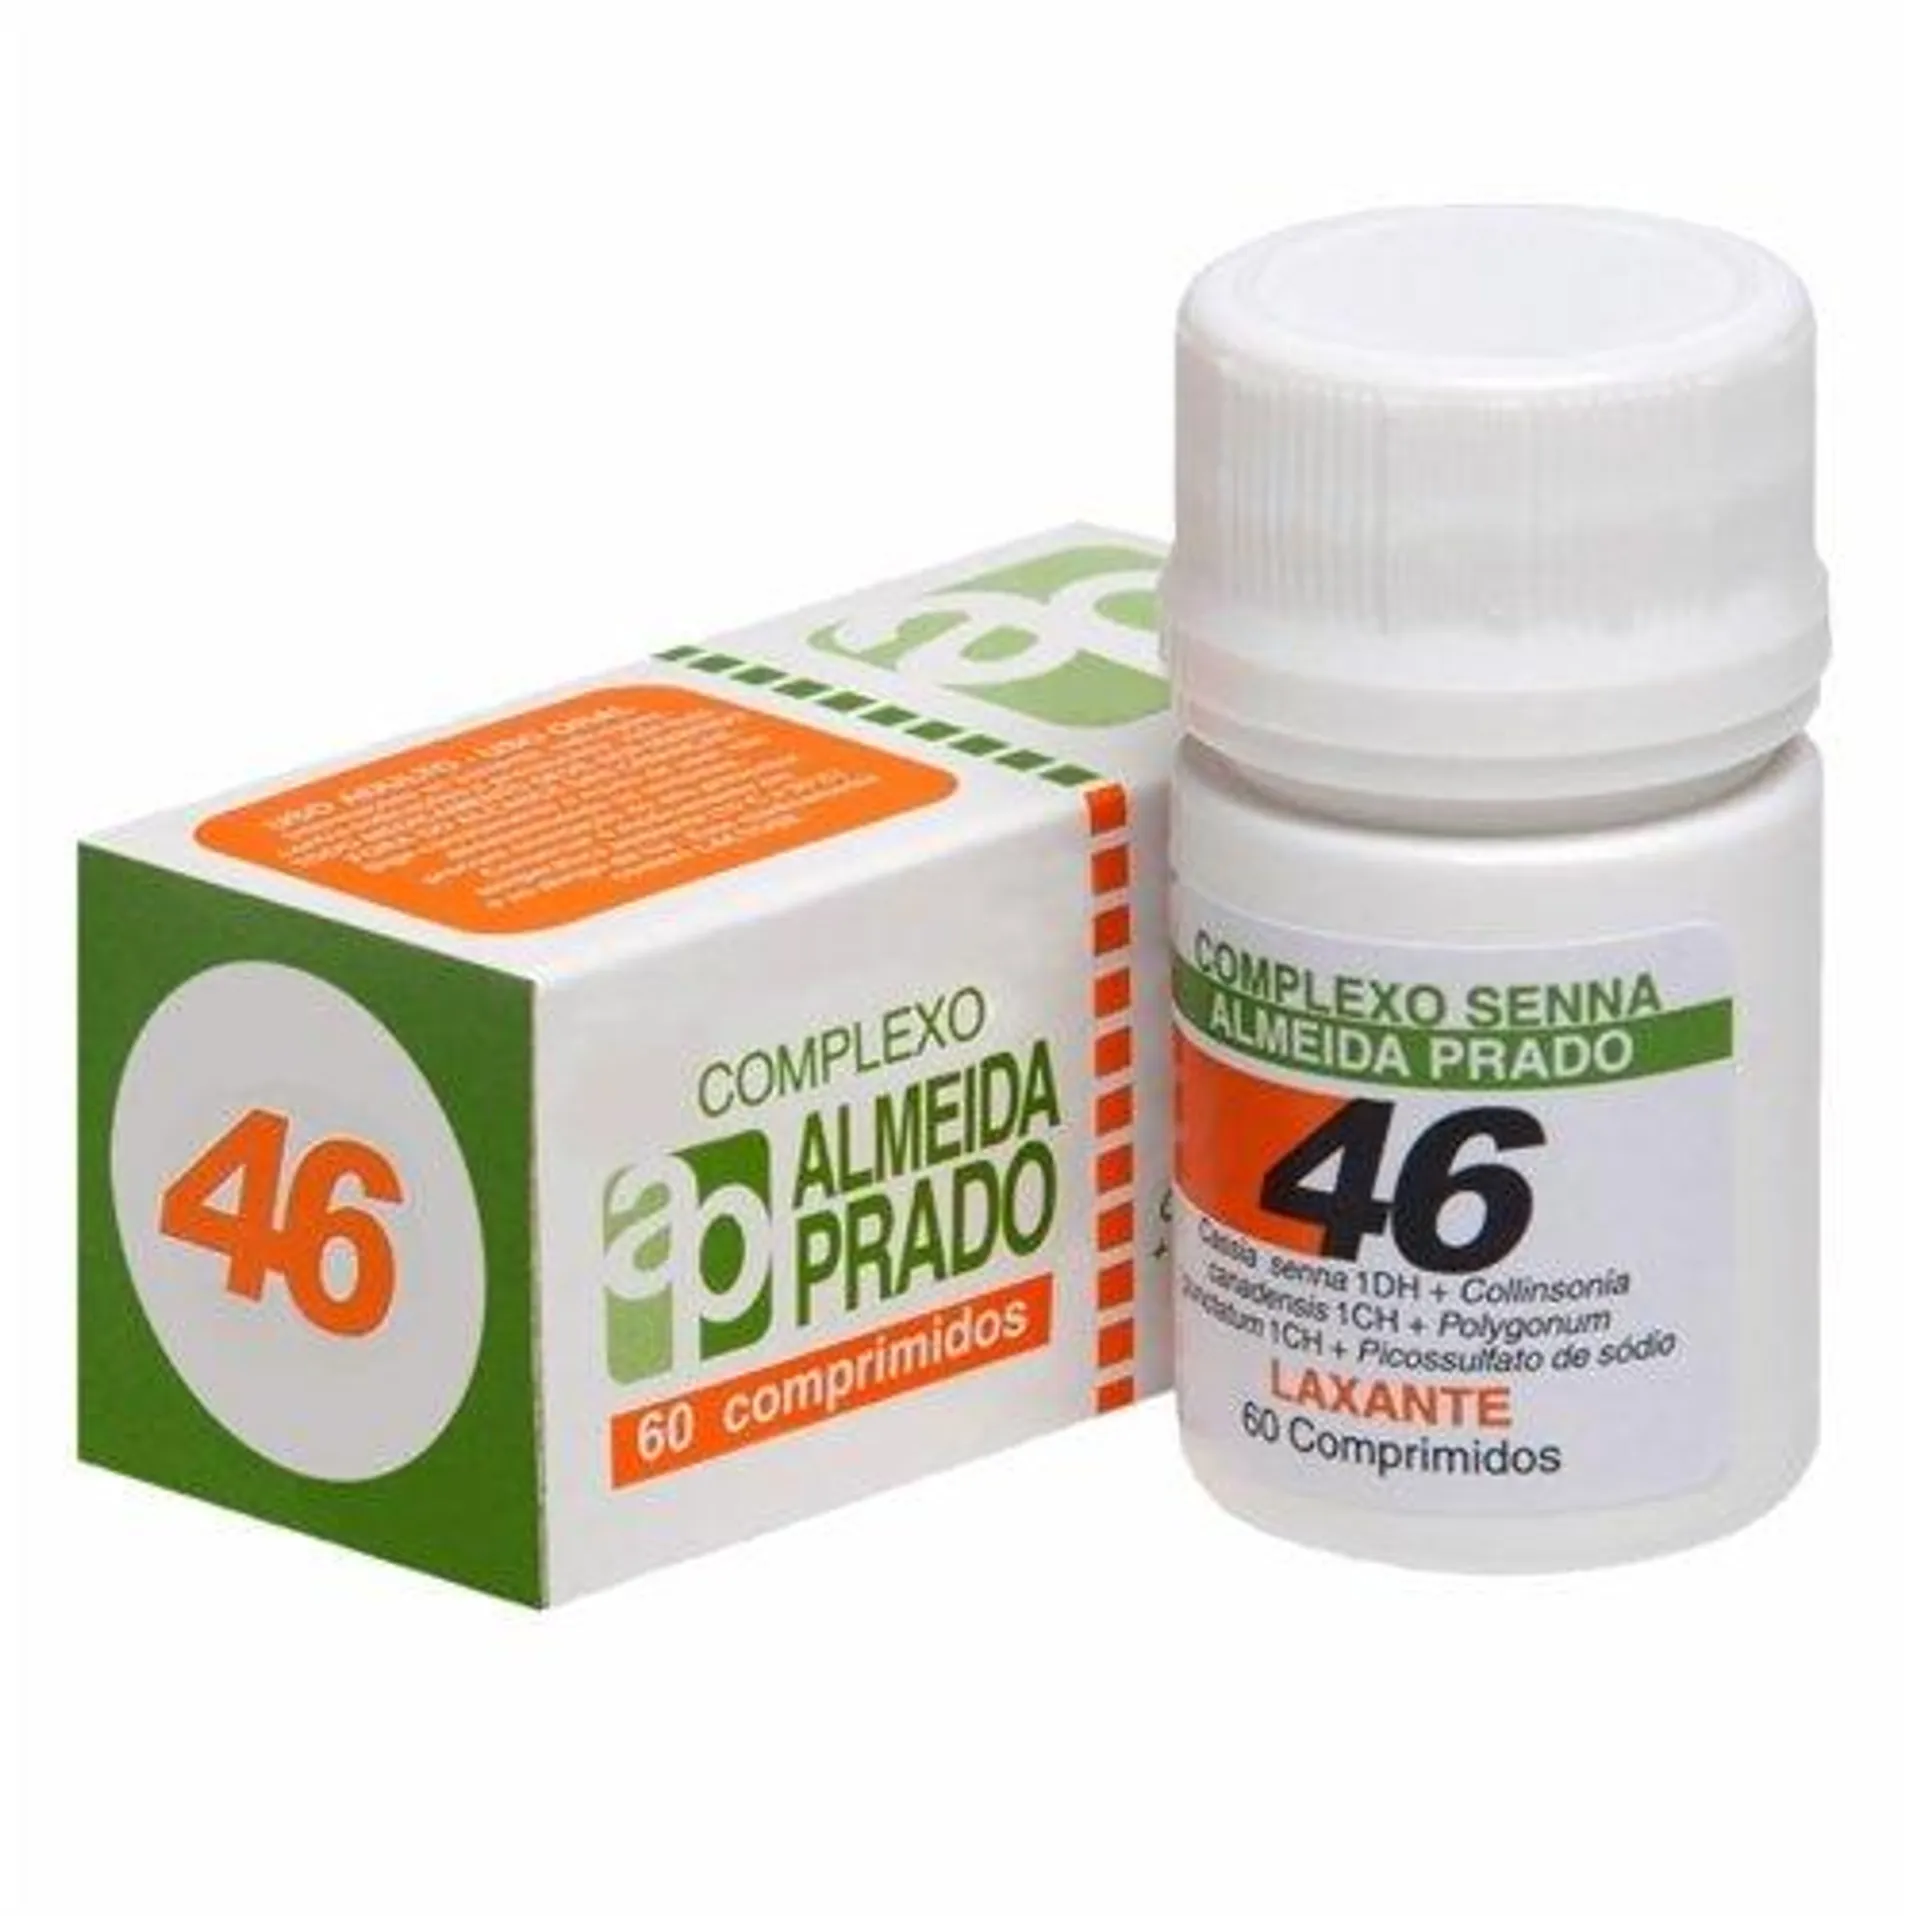 Complexo Homeopatico Almeida Prado 46 60 Comprimidos